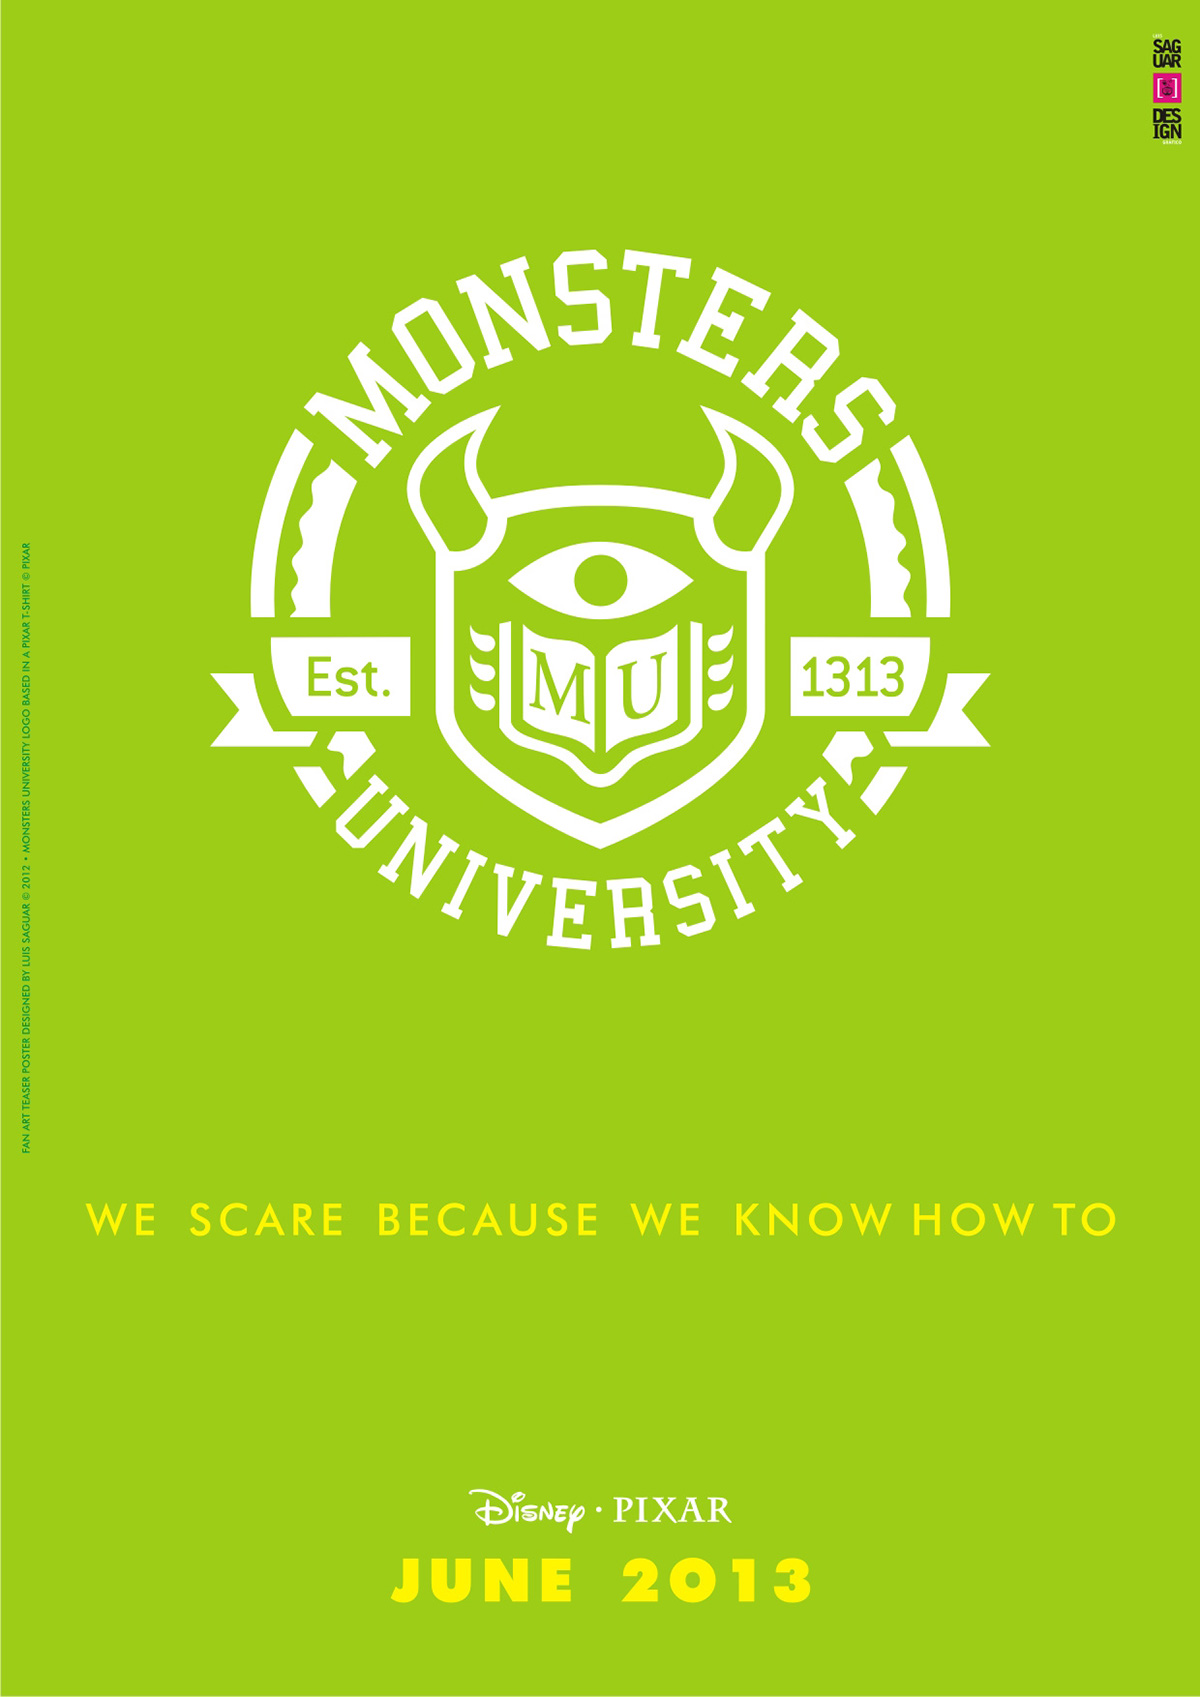 teaser poster pixar Monsters University Luis Saguar fanart Vector Illustration